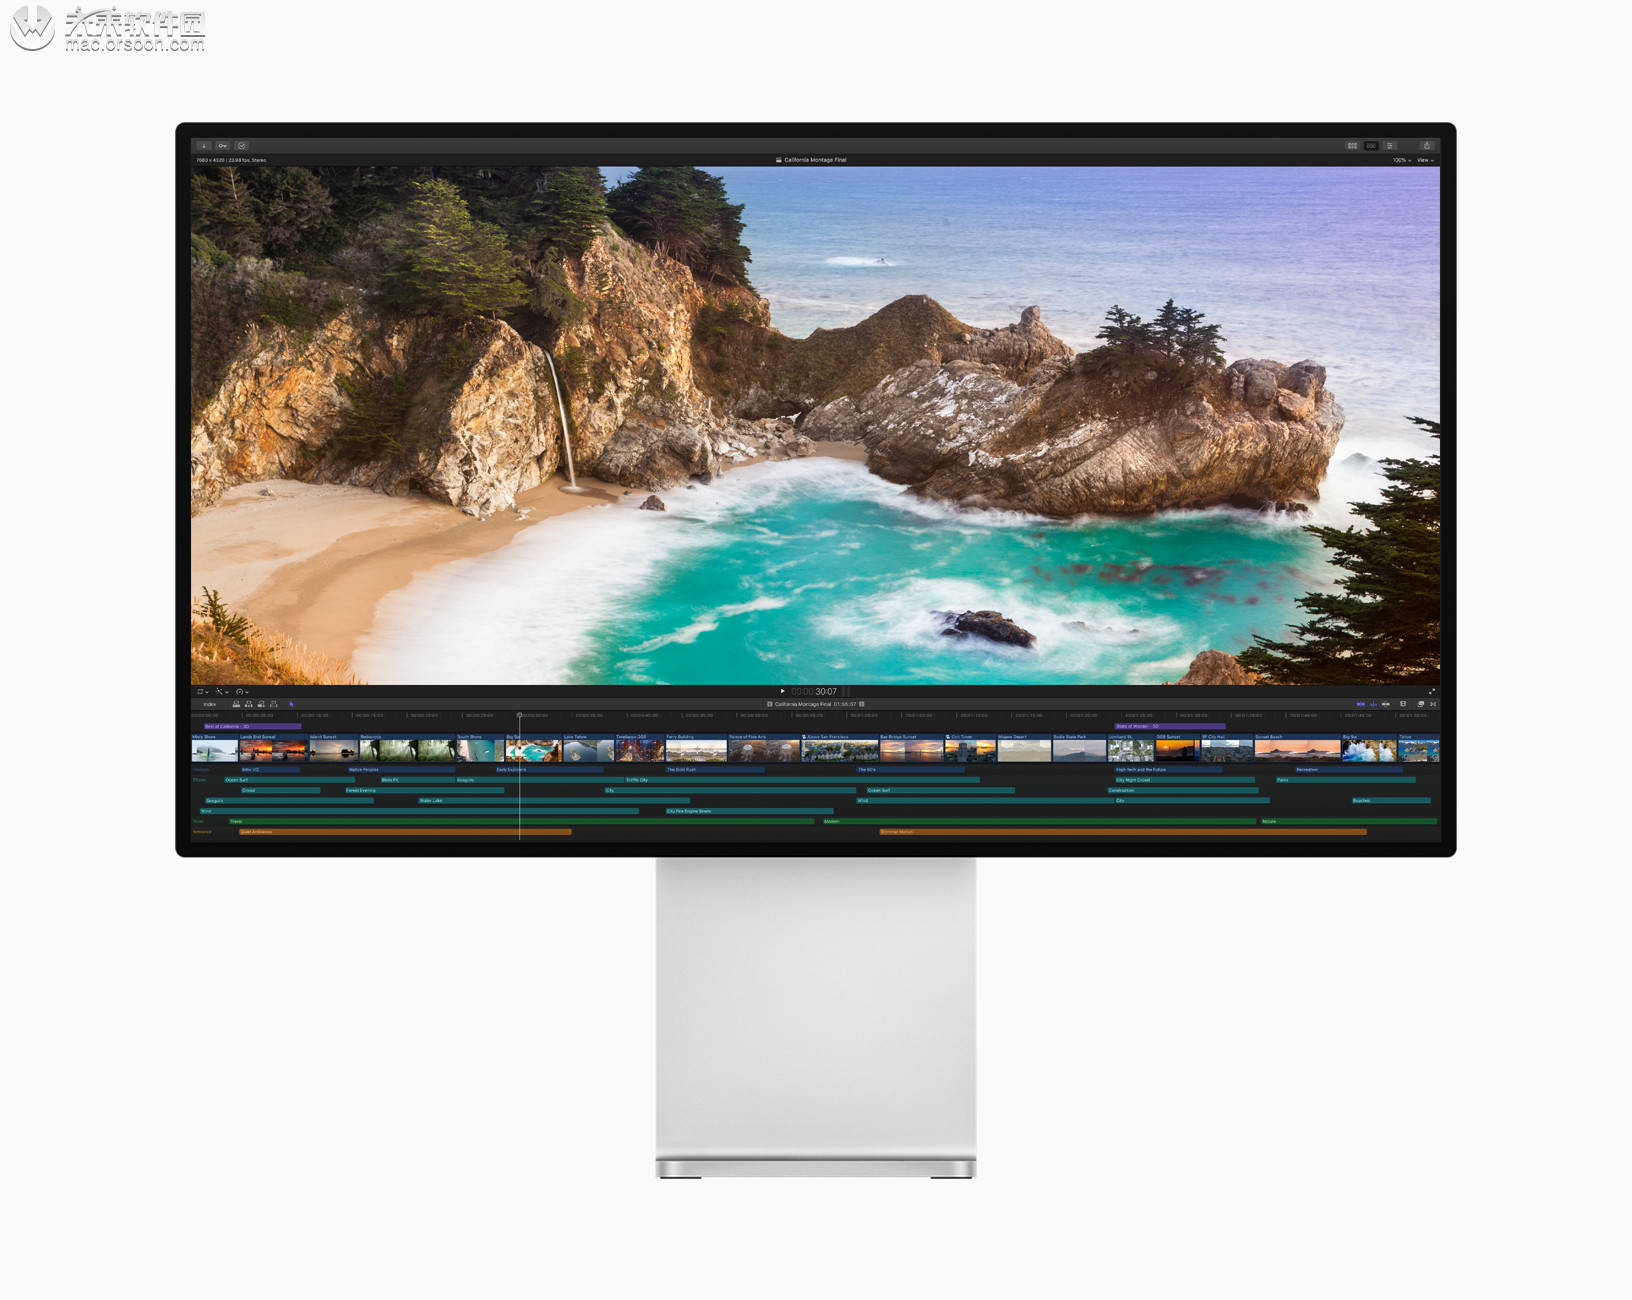 原创             Mac上最好用最专业的视频剪辑工具：Final Cut Pro X最新激活版